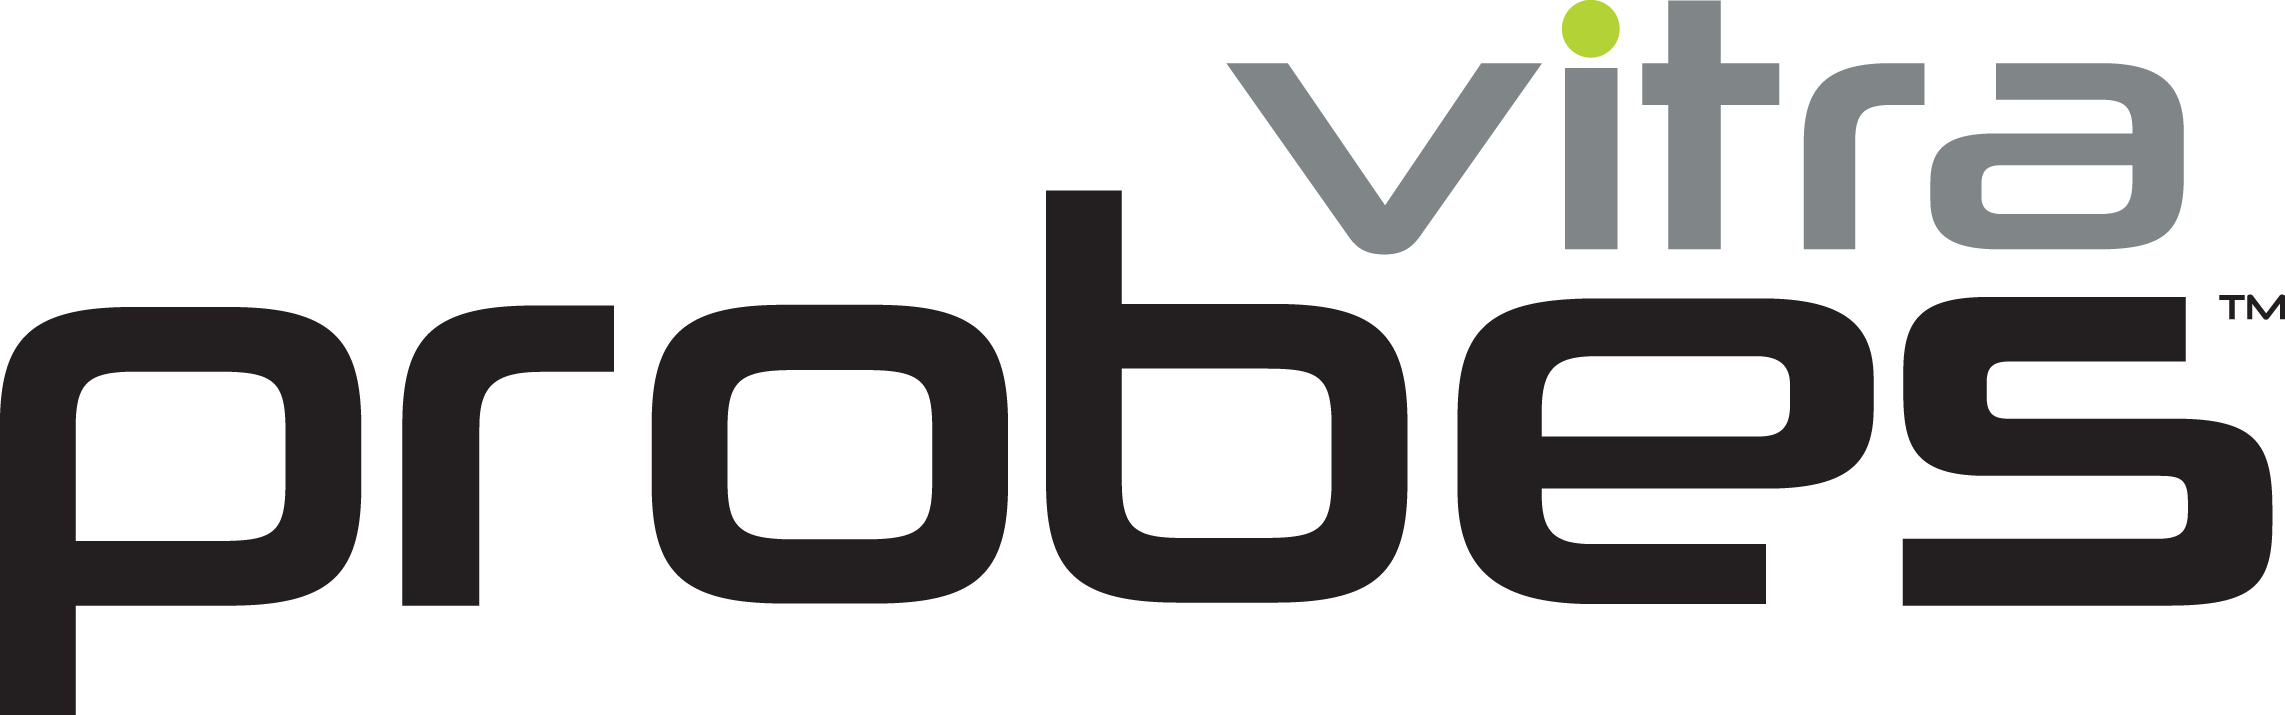 Vitra Probes Logo - Vitra Probes Logo (2285x715)